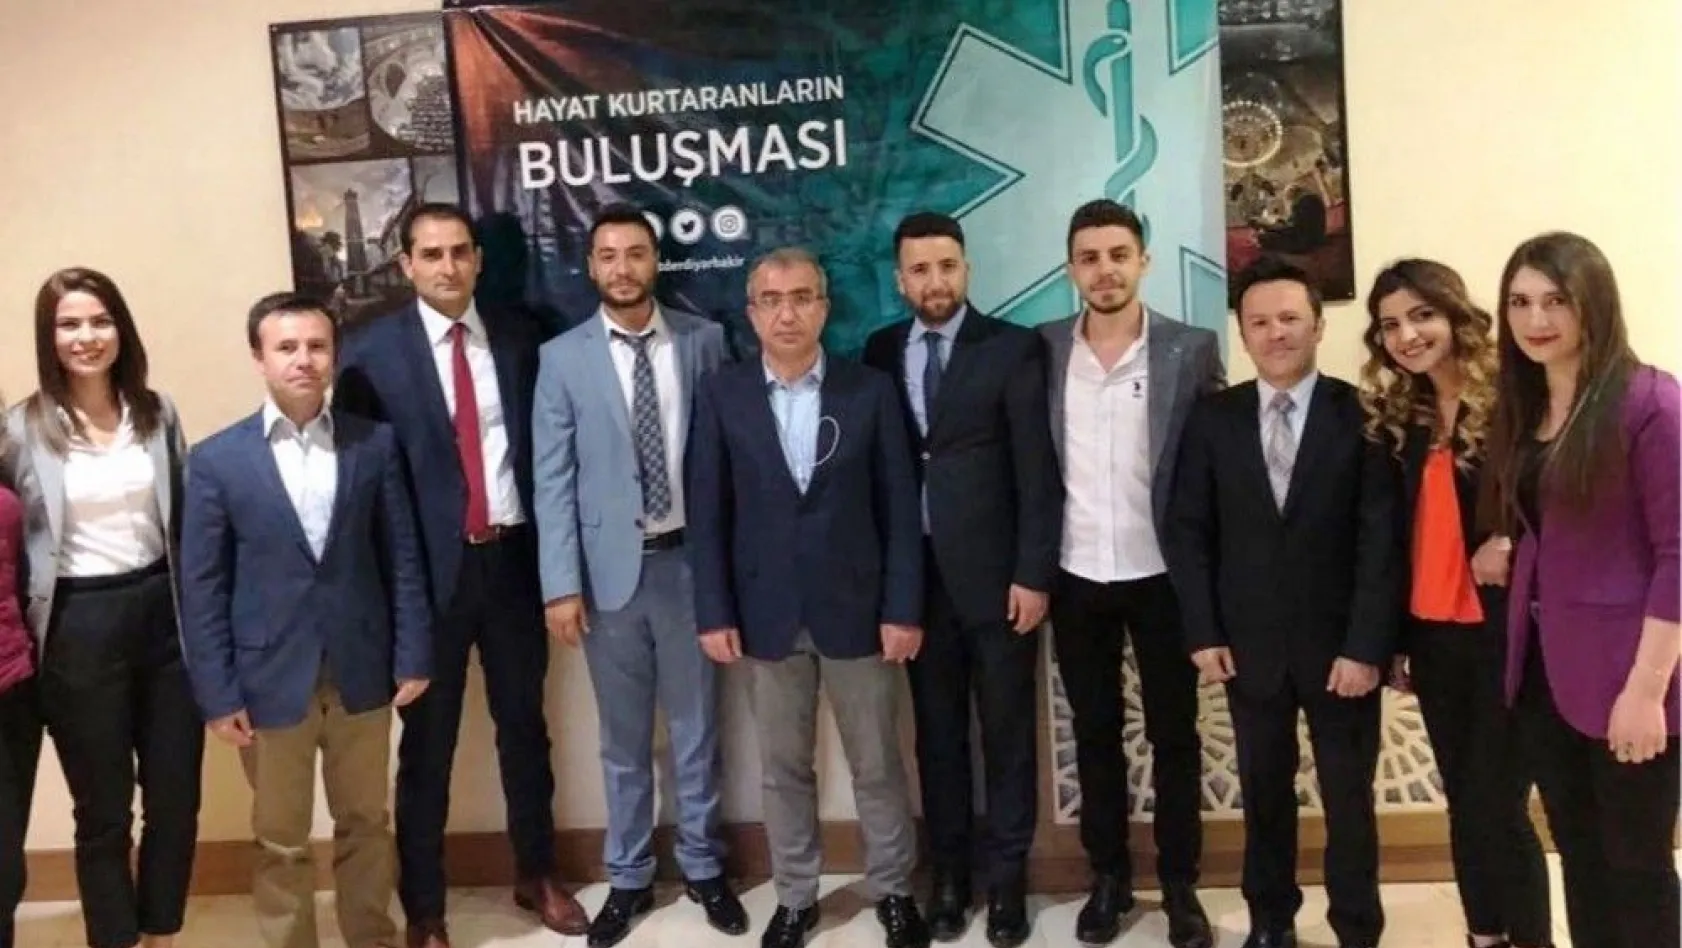 Acil Tıp Teknisyenleri Diyarbakır'da toplandı
